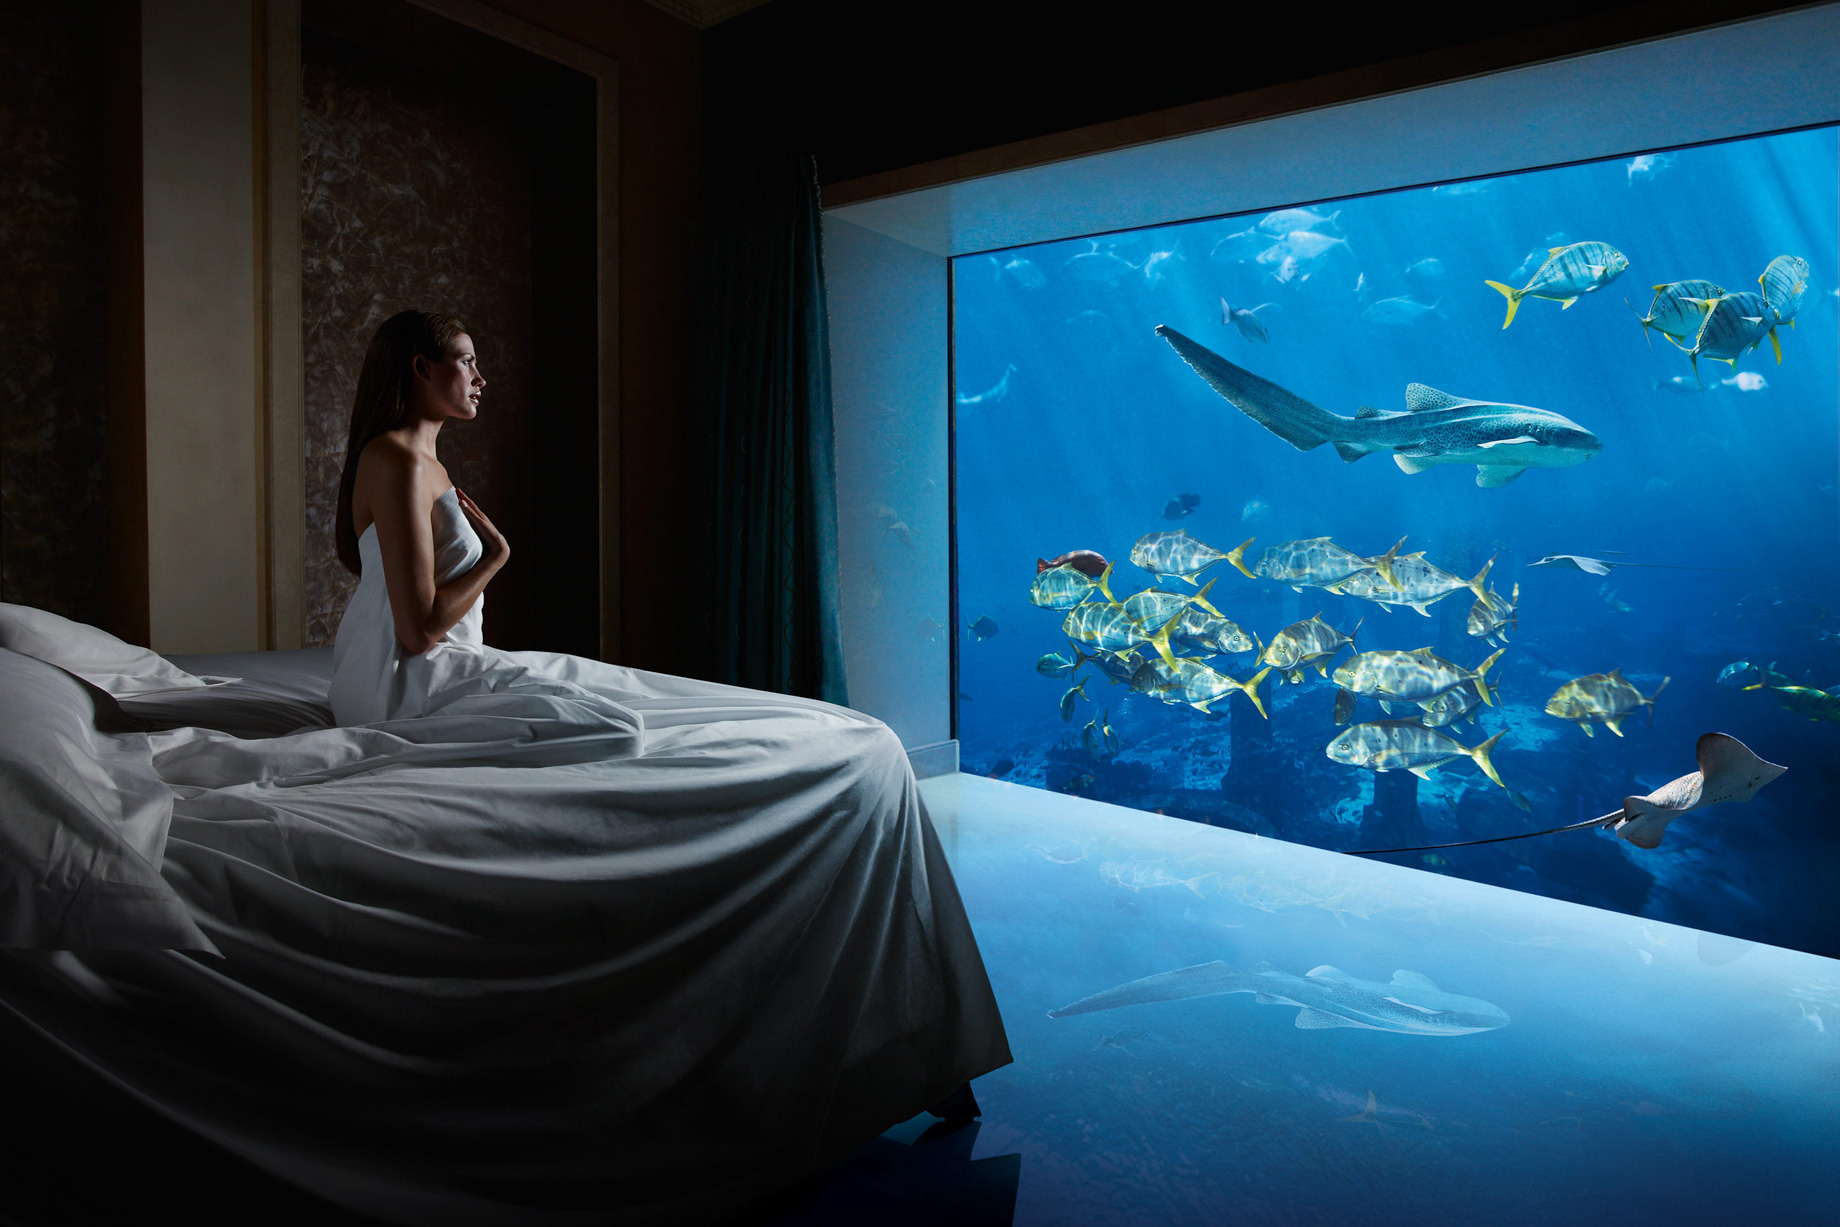 Atlantis The Palm Resort – Crescent Rd, Dubai, UAE – Underwater Suite Bedroom Aquarium View